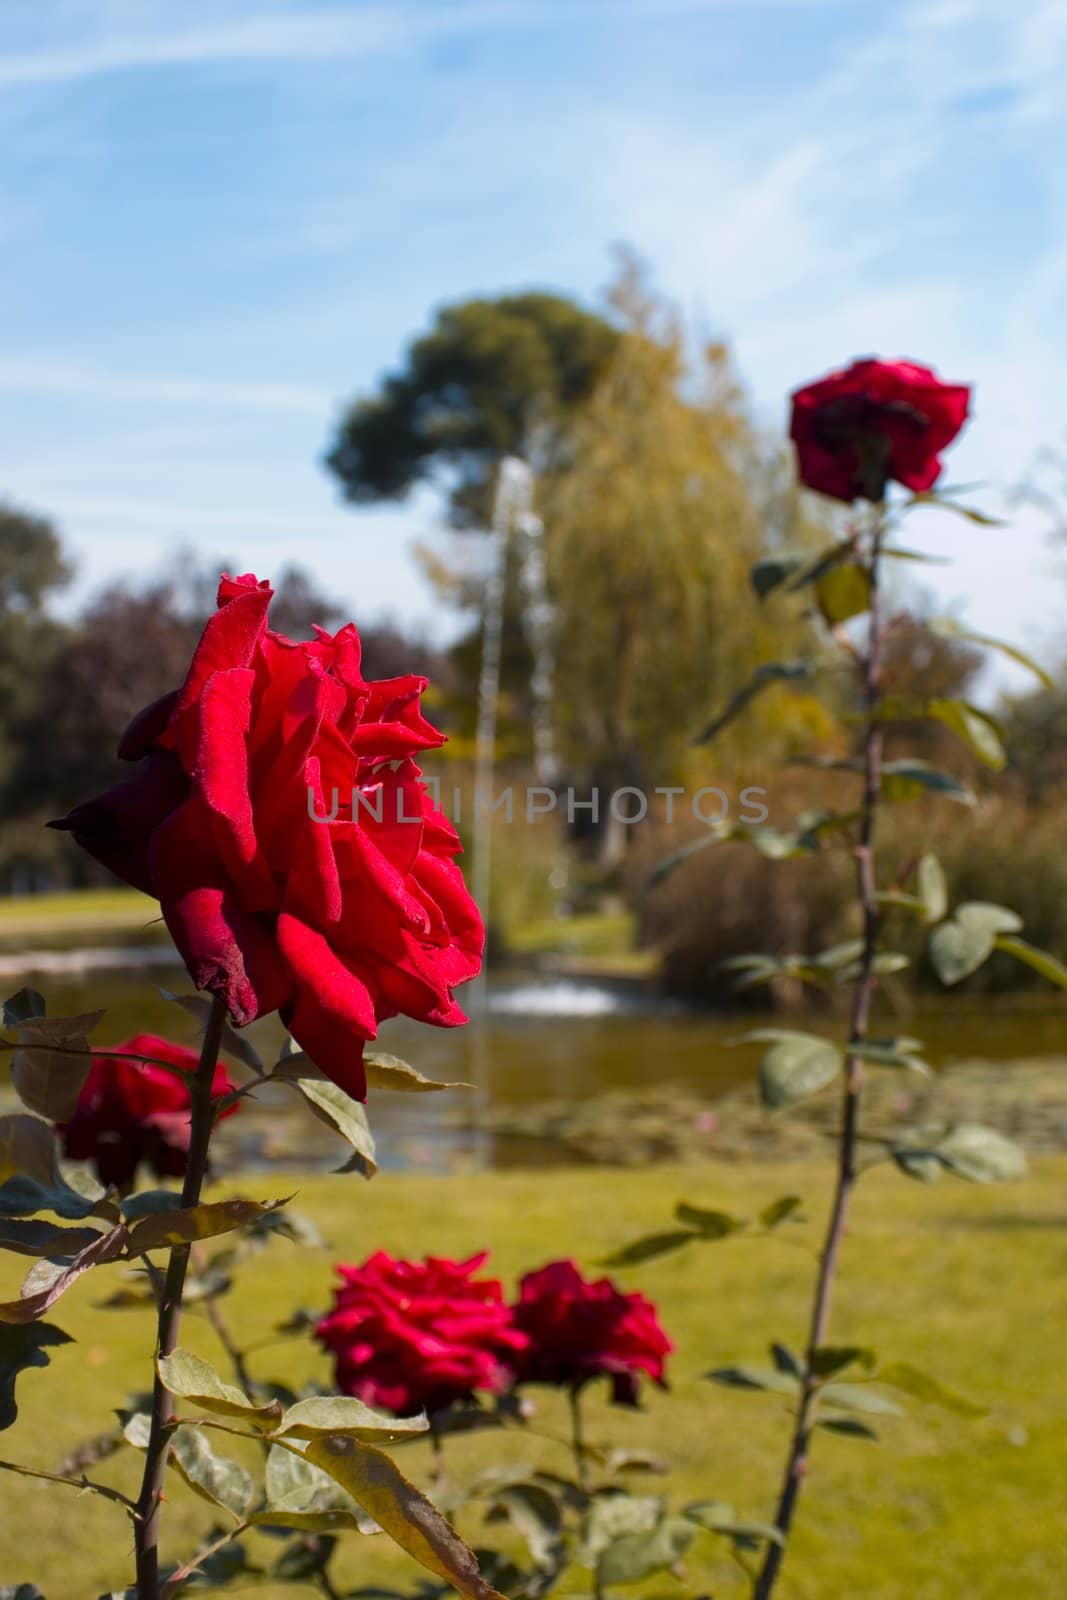 a red rose flower in a desfocused garden